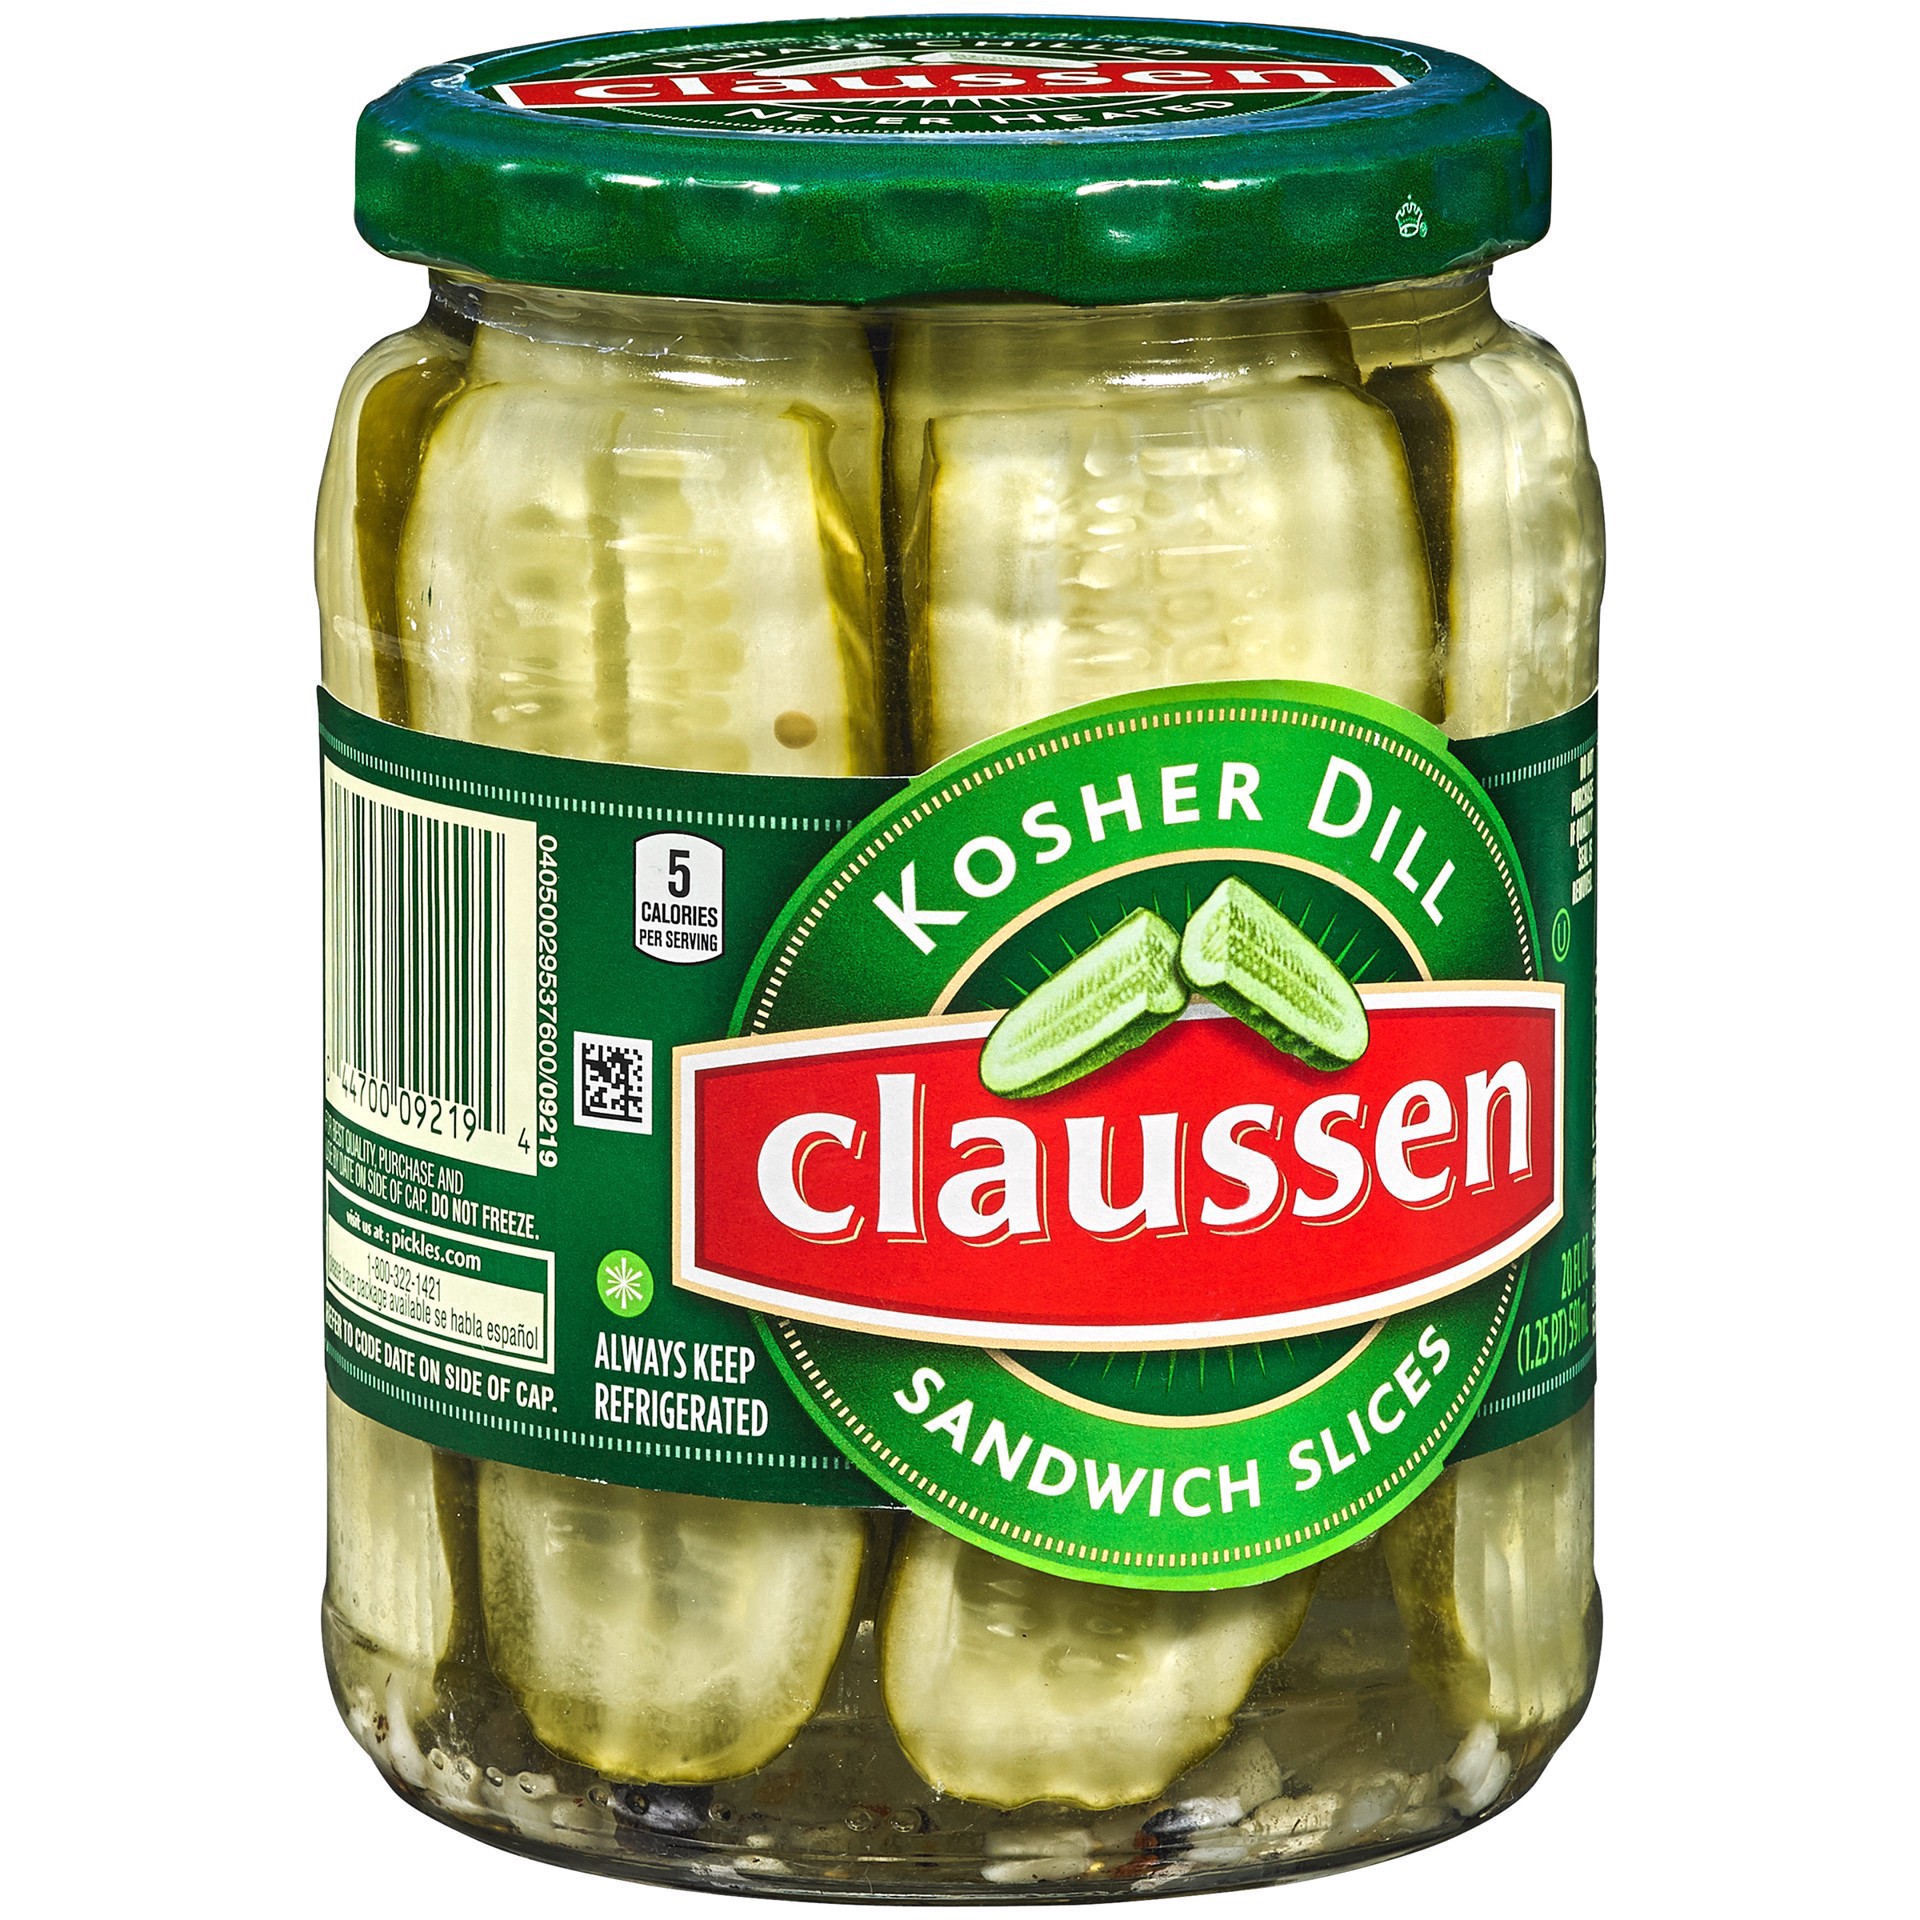 slide 97 of 144, Claussen Kosher Dill Pickle Sandwich Slices, 20 fl. oz. Jar, 20 fl oz